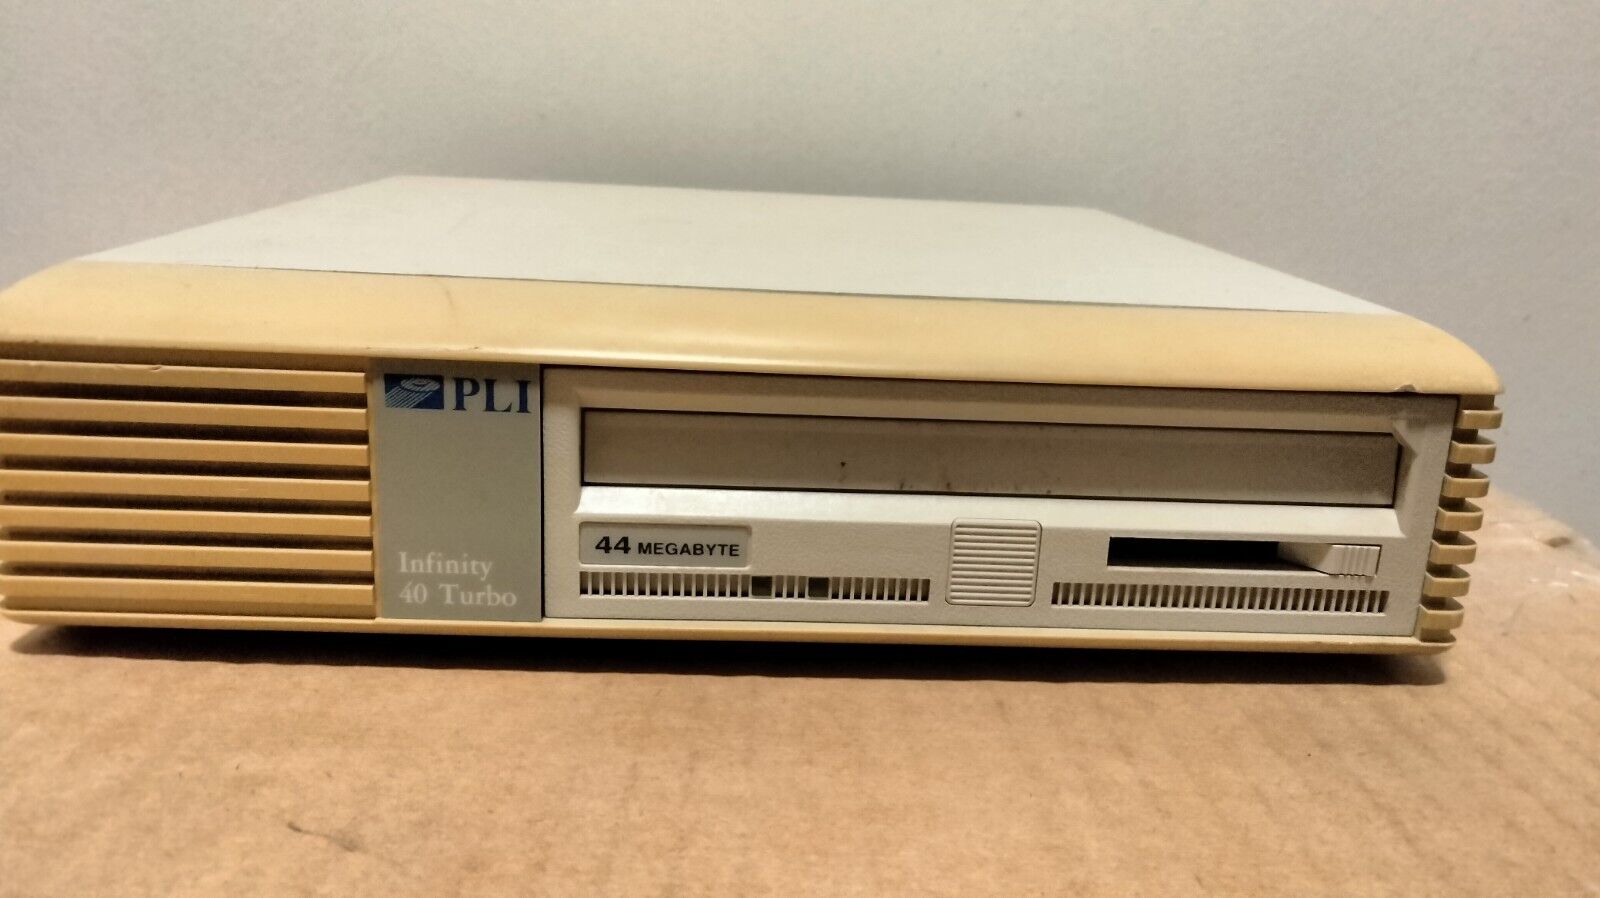 Vintage PLI Infinity 40 Turbo INF40T Tape Drive Apple Macintosh 